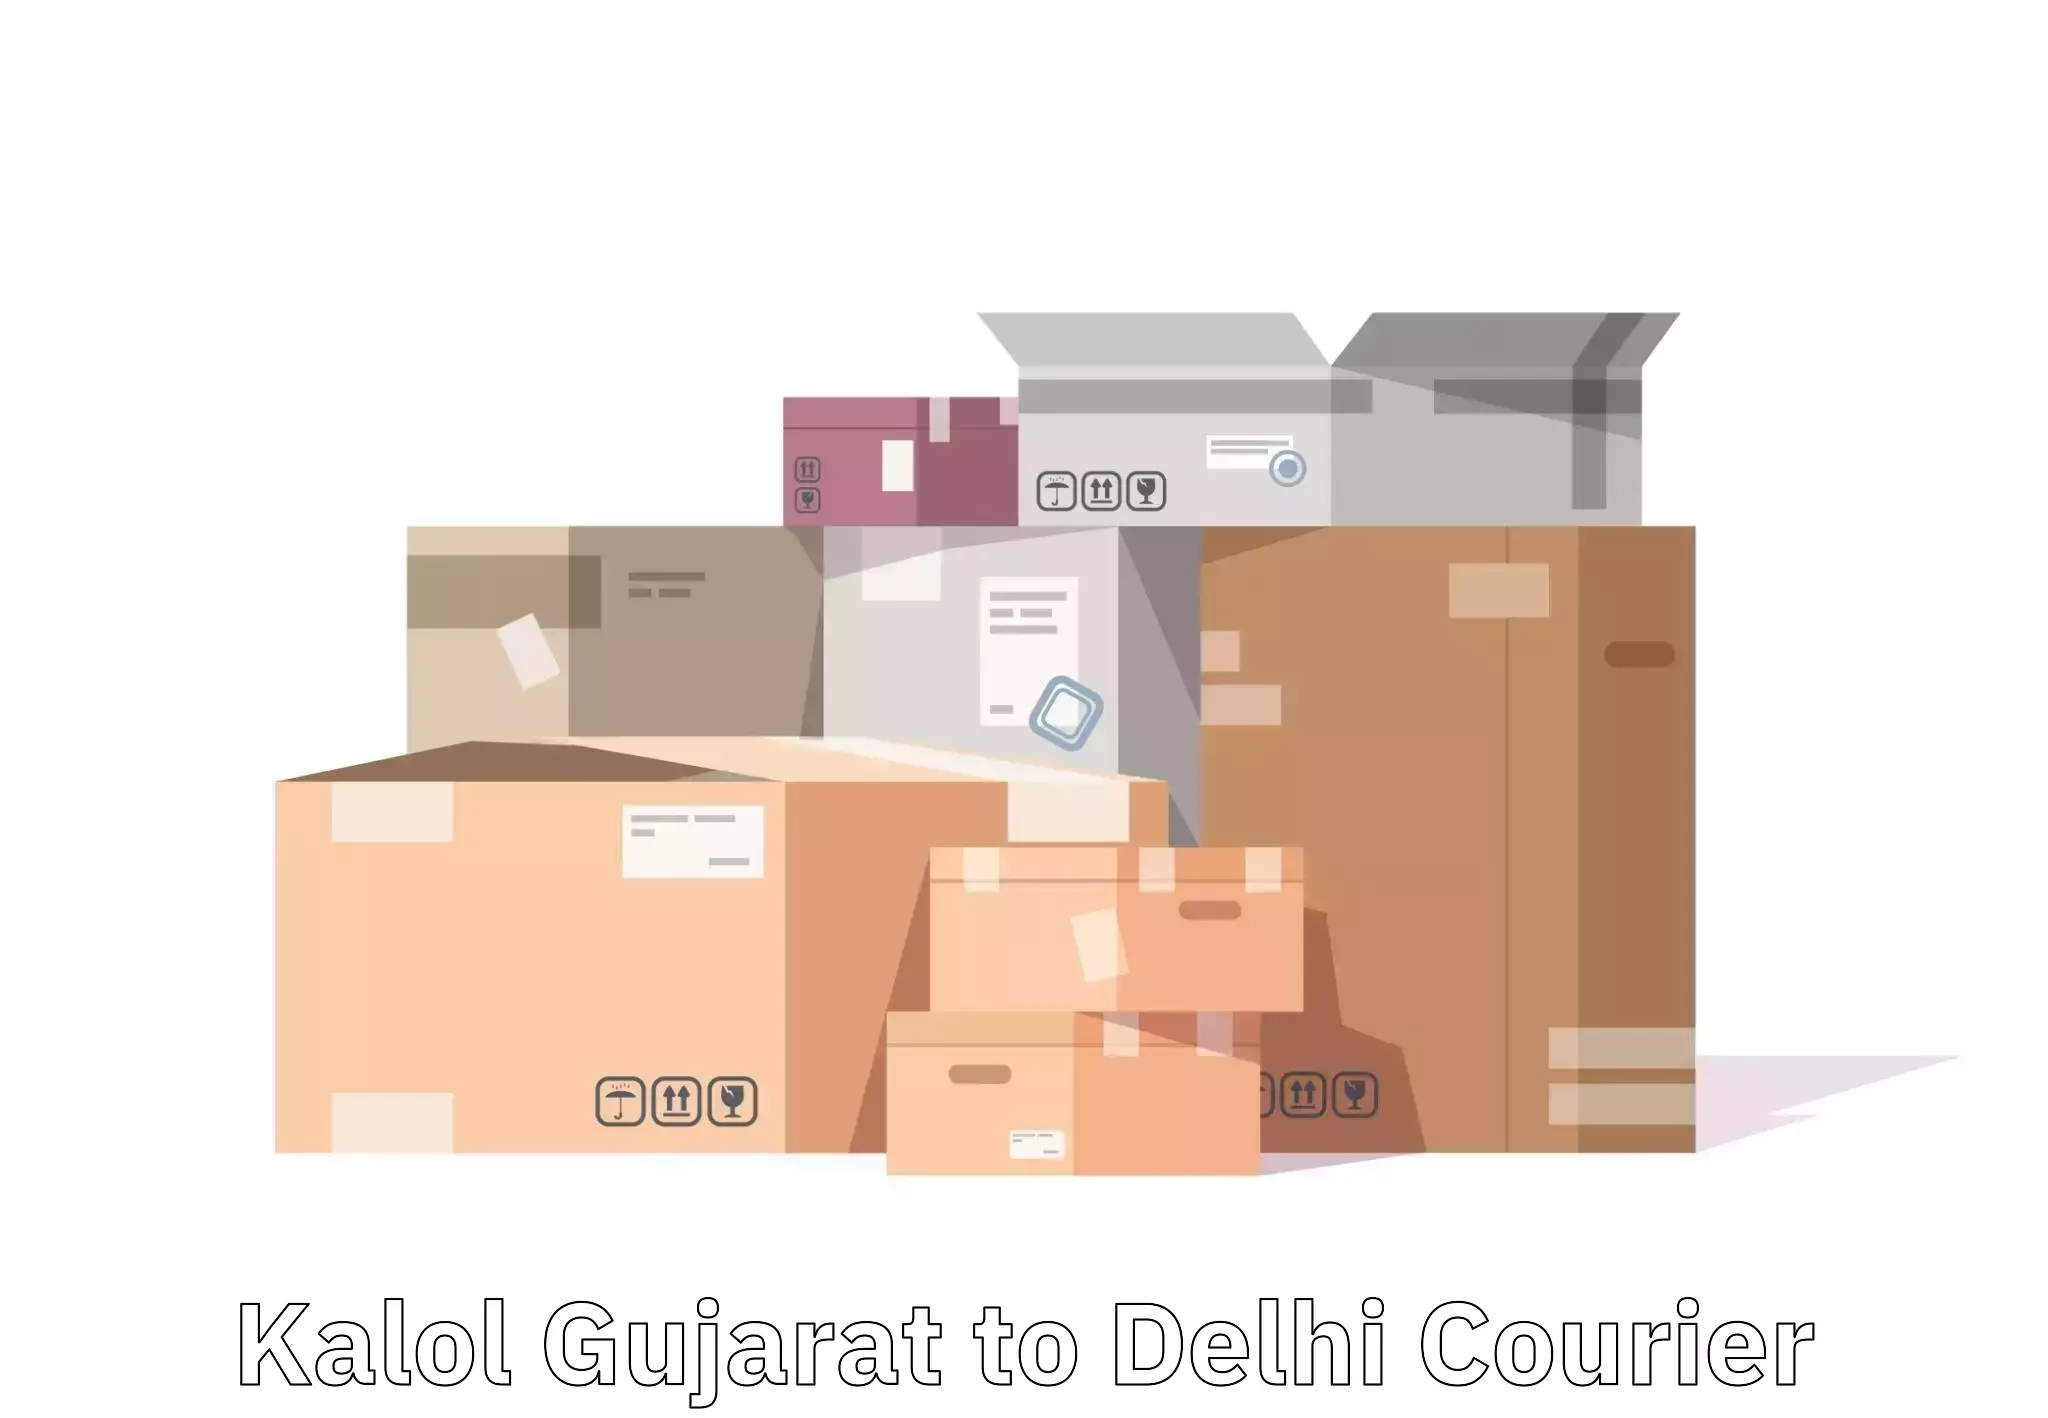 Baggage transport updates in Kalol Gujarat to Lodhi Road